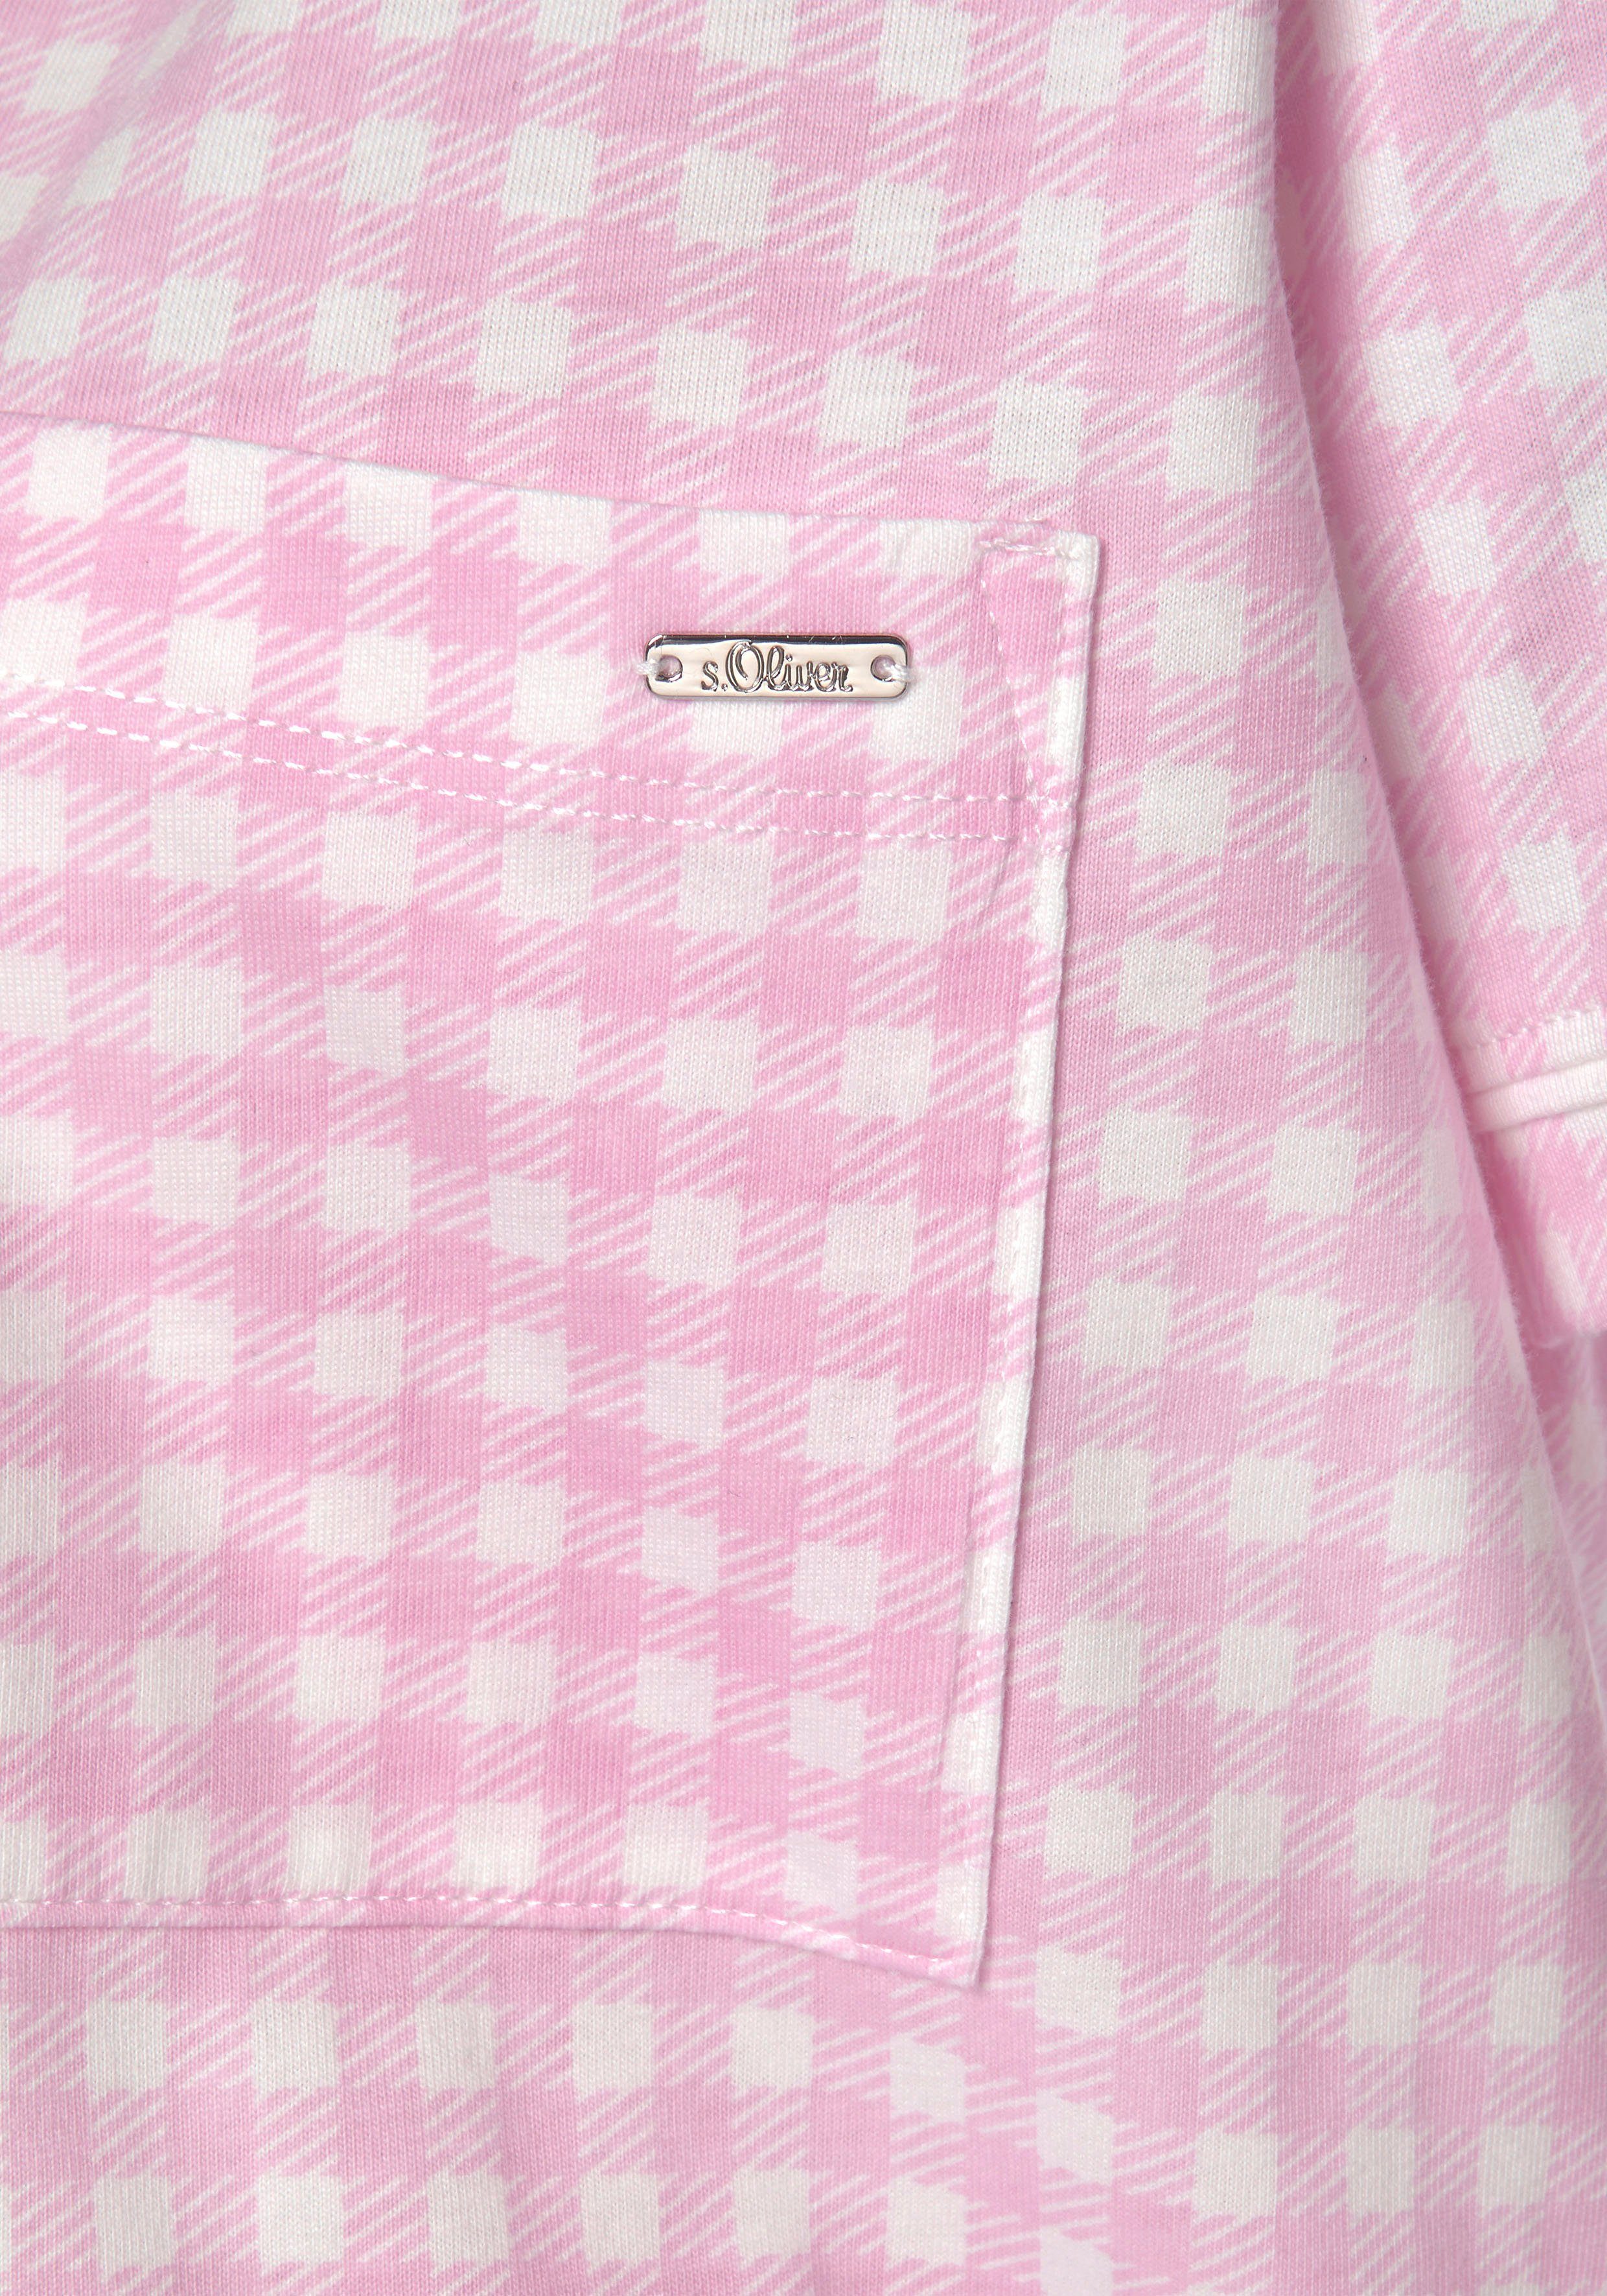 Brusttasche aufgesetzter mit Nachthemd rosa-kariert s.Oliver